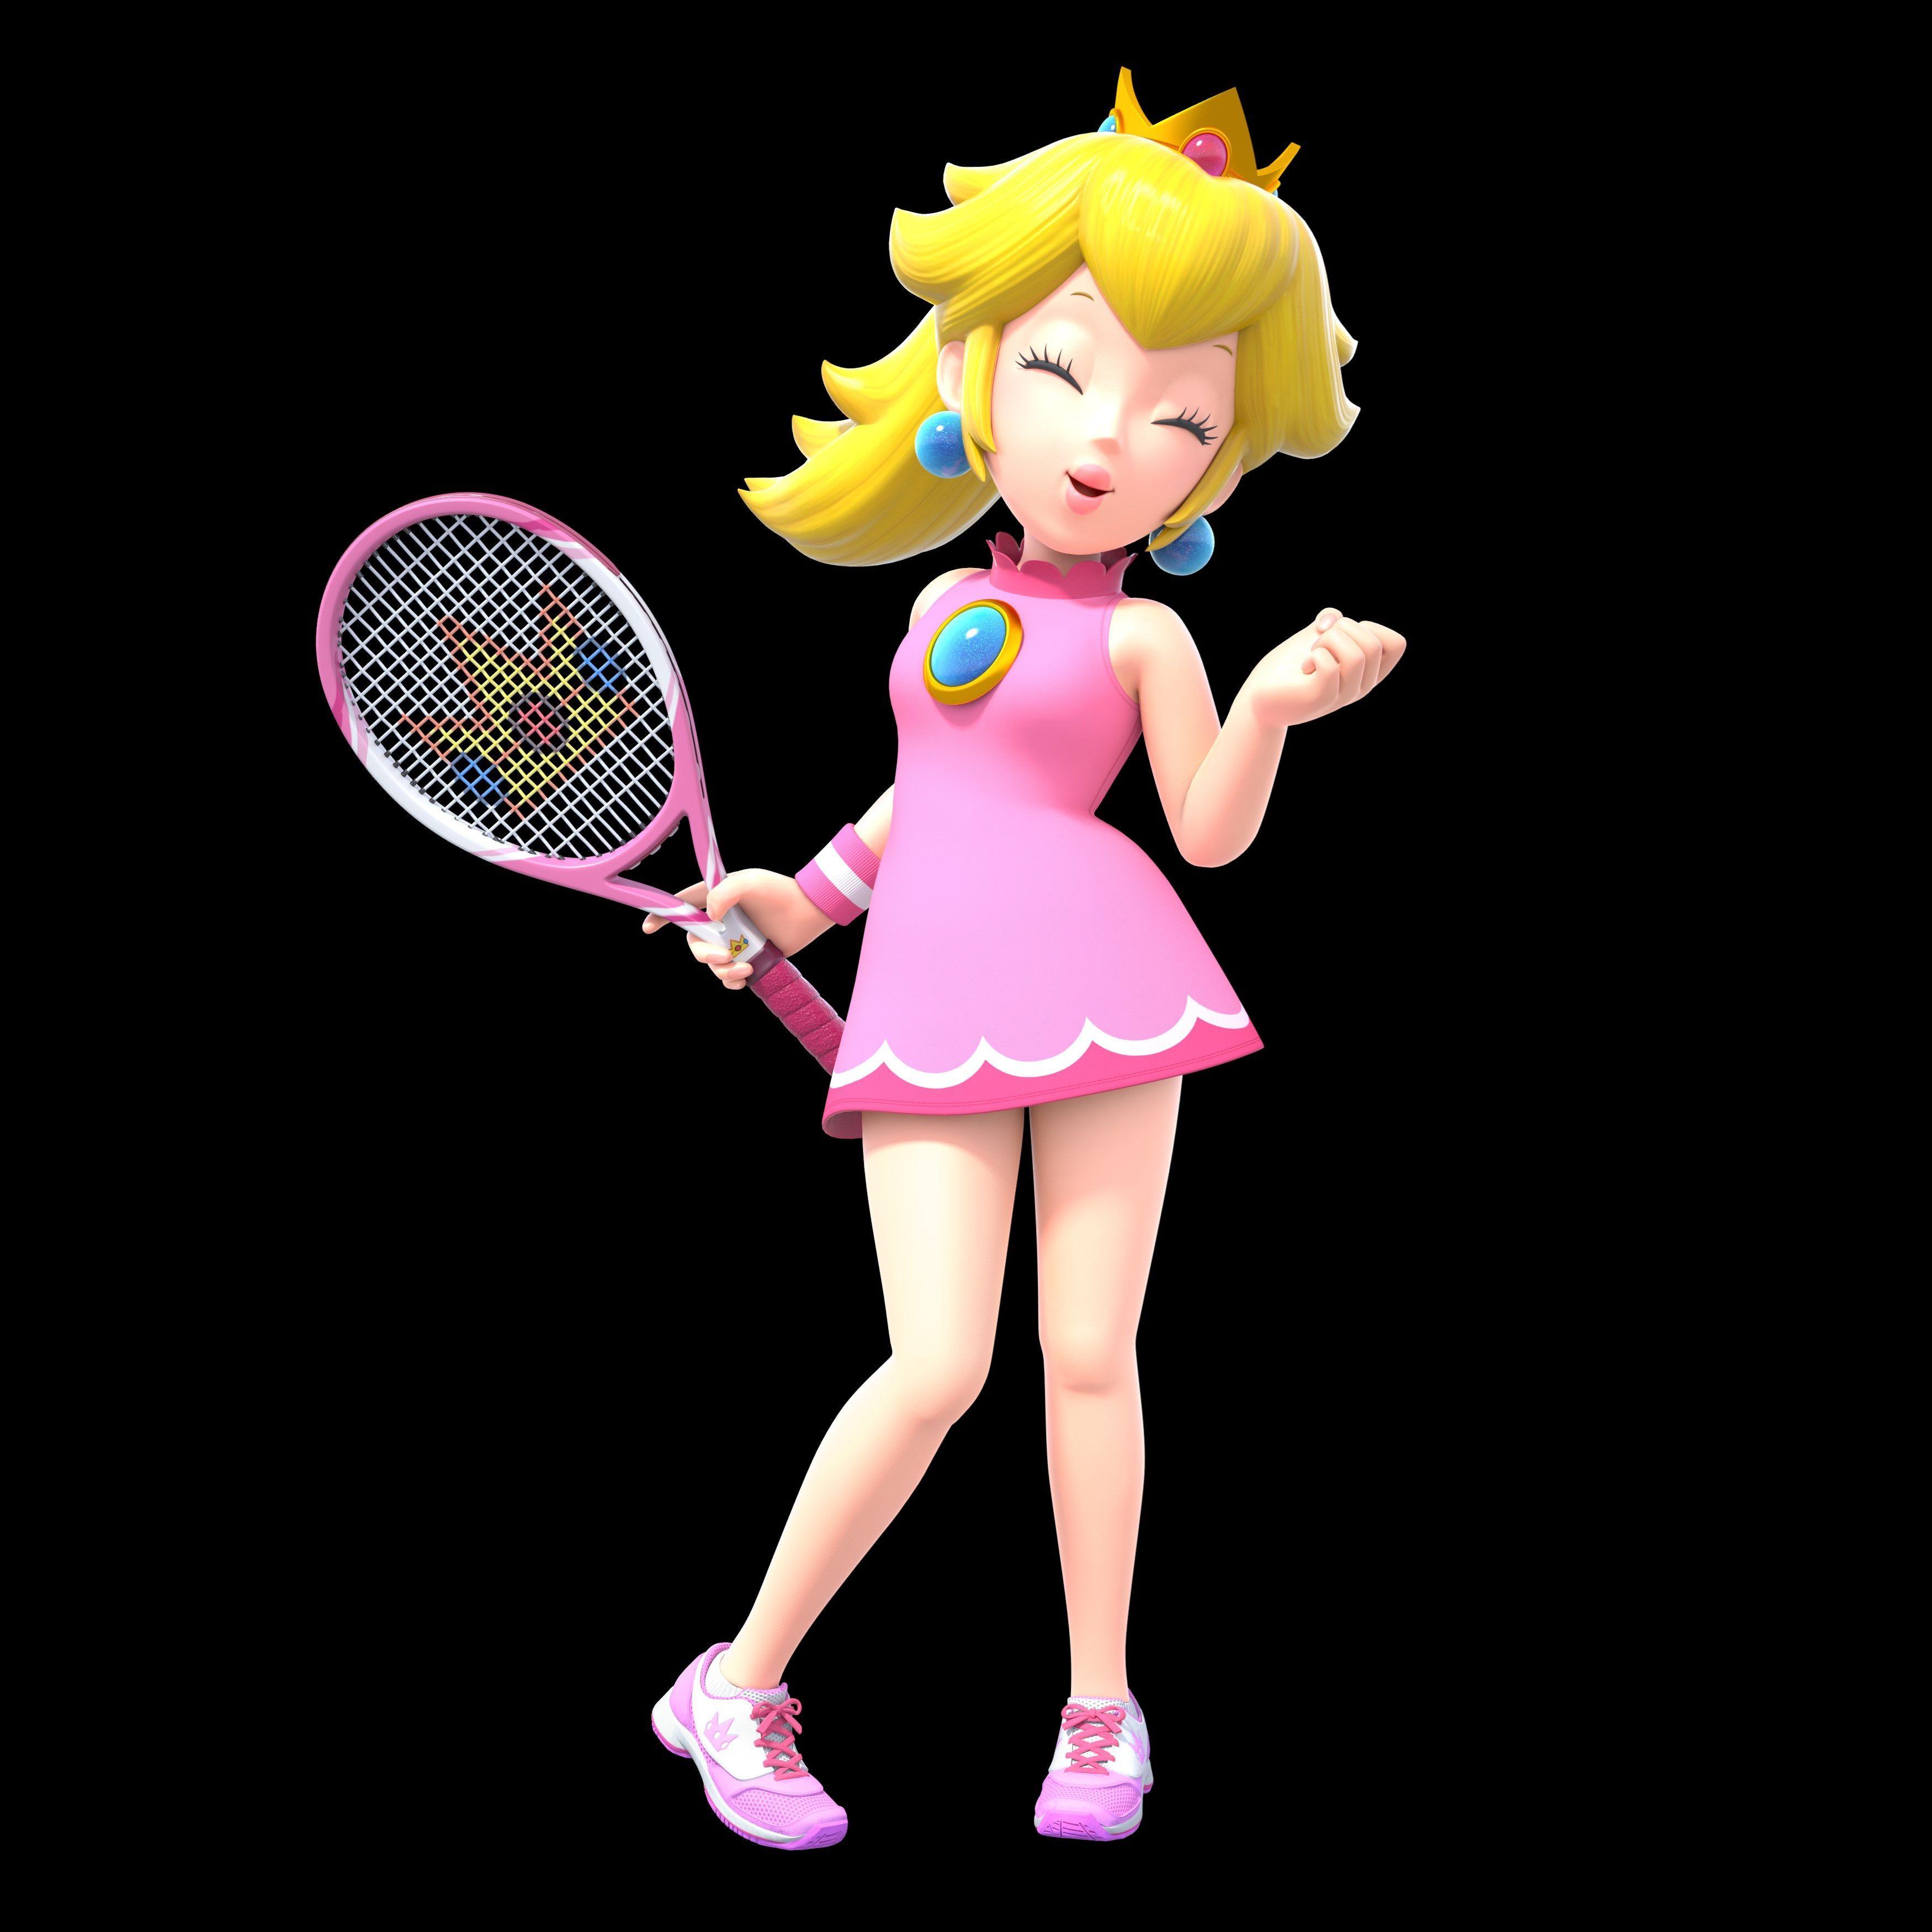 Peach Tennis Aces. Princess peach. Peach mario